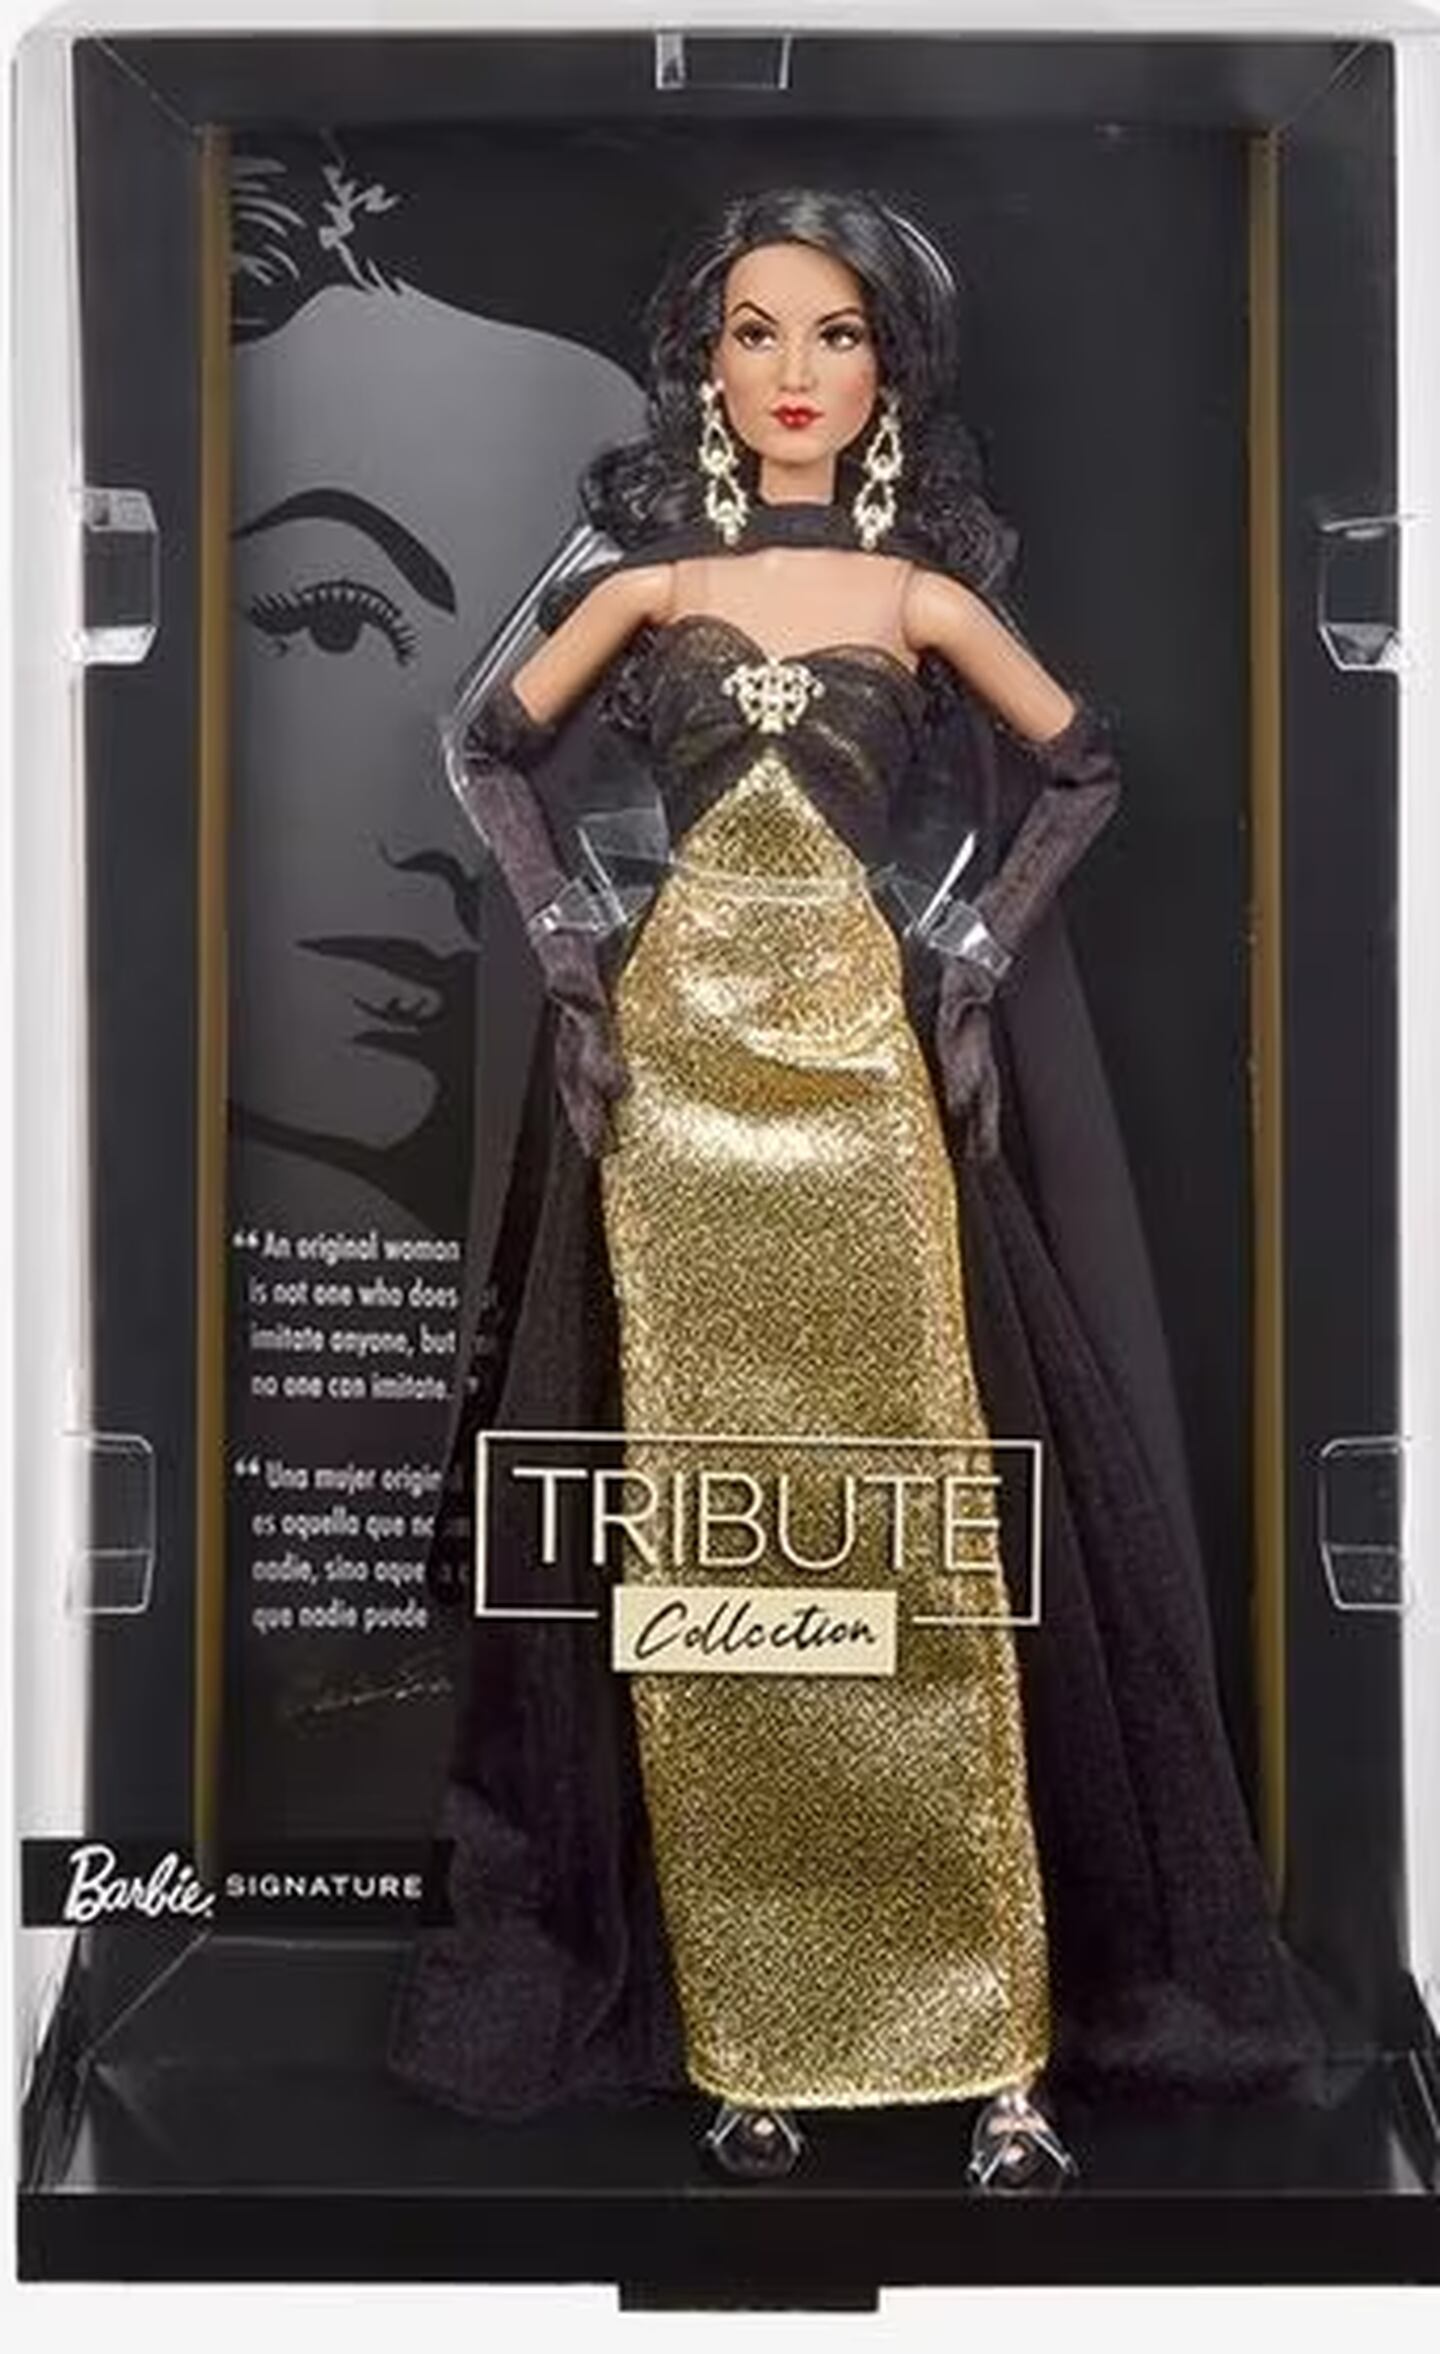 La elegancia y prestancia de María Félix quedó expresada en el diseño de la Barbie en su honor.